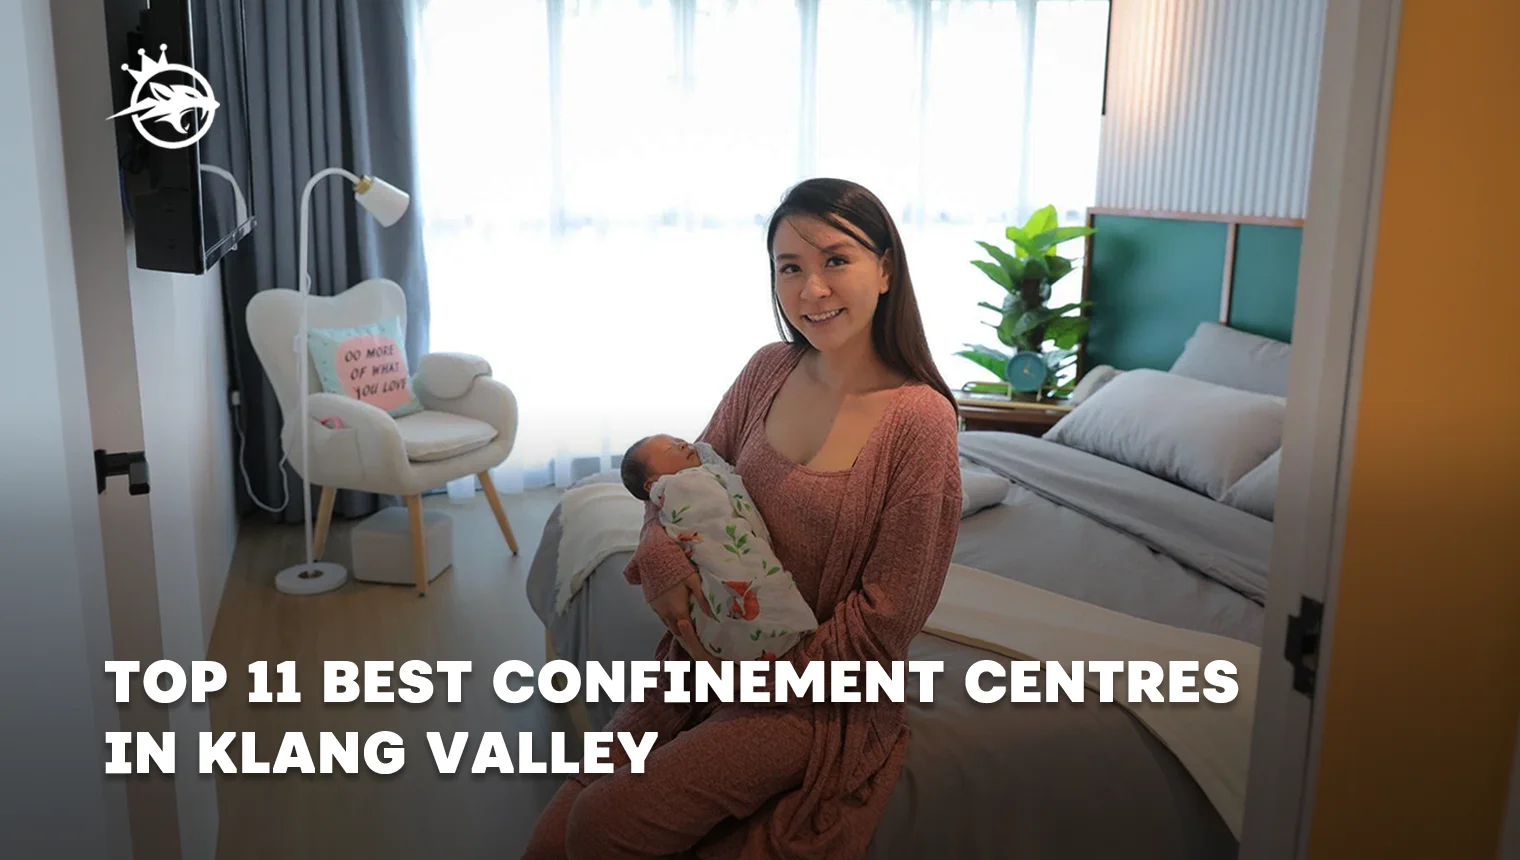 Top 11 Best Confinement Centres in Klang Valley